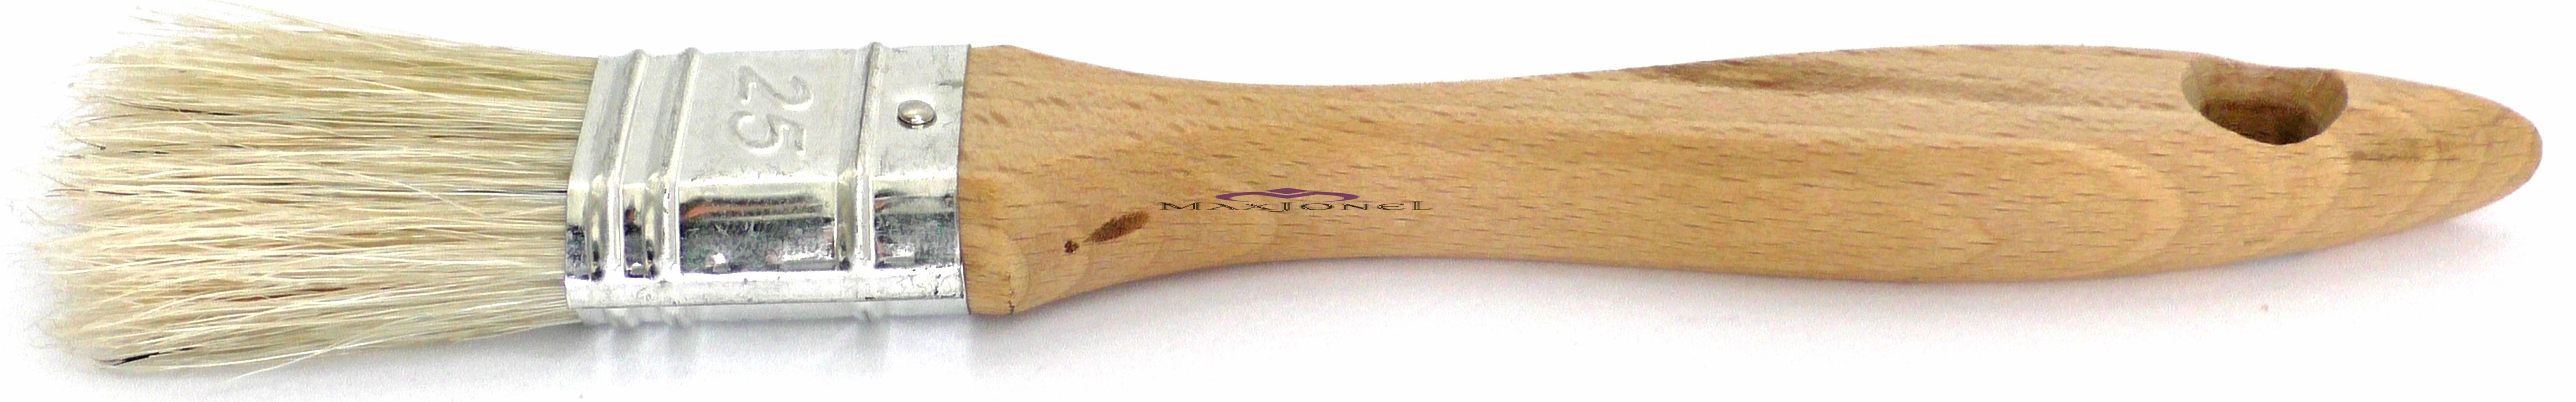 Pensula maner lemn - fir natural 25 mm